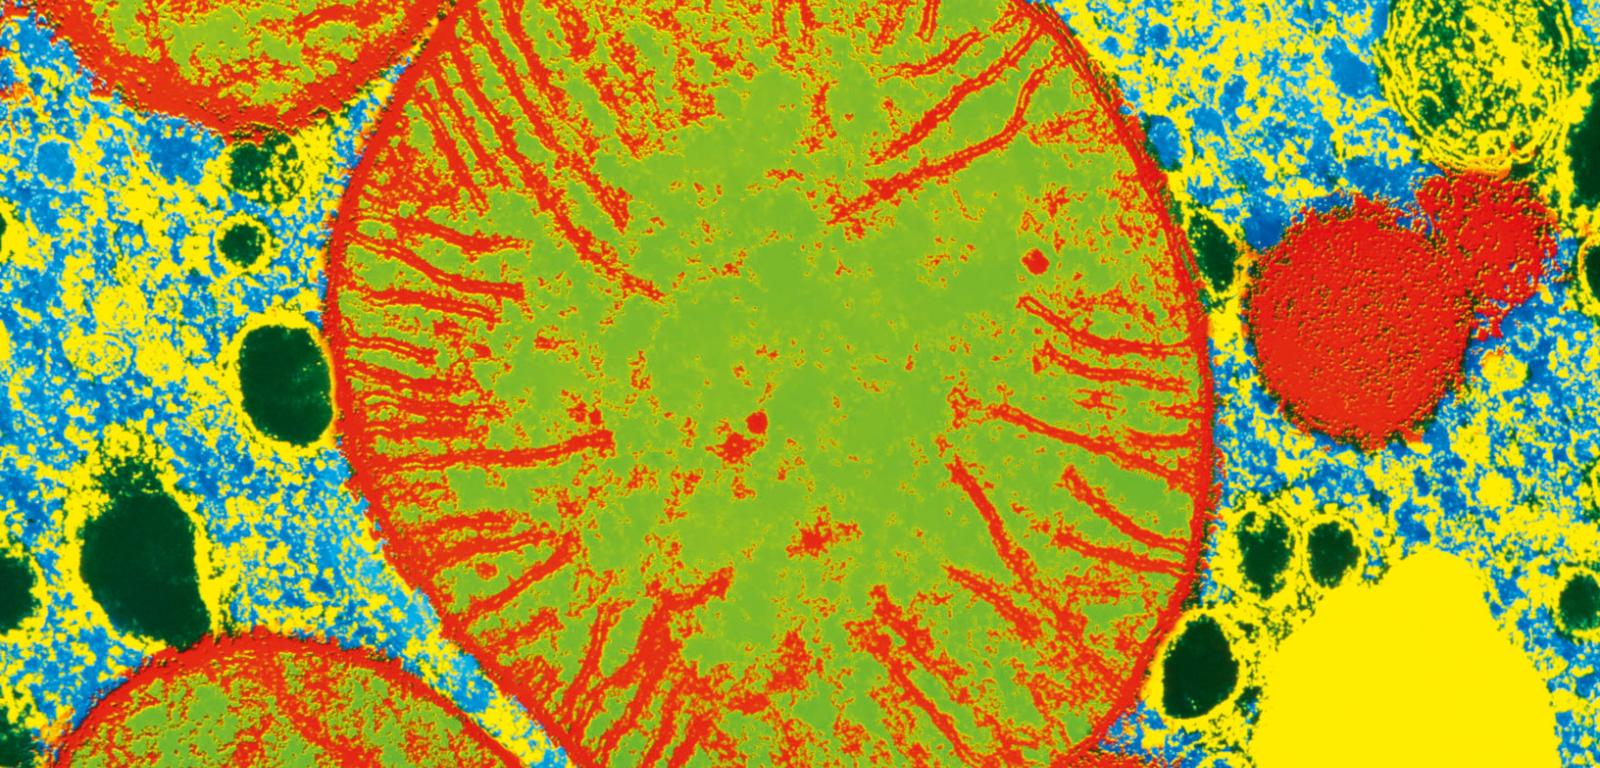 Mitochondria (zielono-czerwone) w skaningowym mikroskopie elektronowym. Struktury te mają własny materiał genetyczny, a ich głównym zadaniem jest produkcja energii.